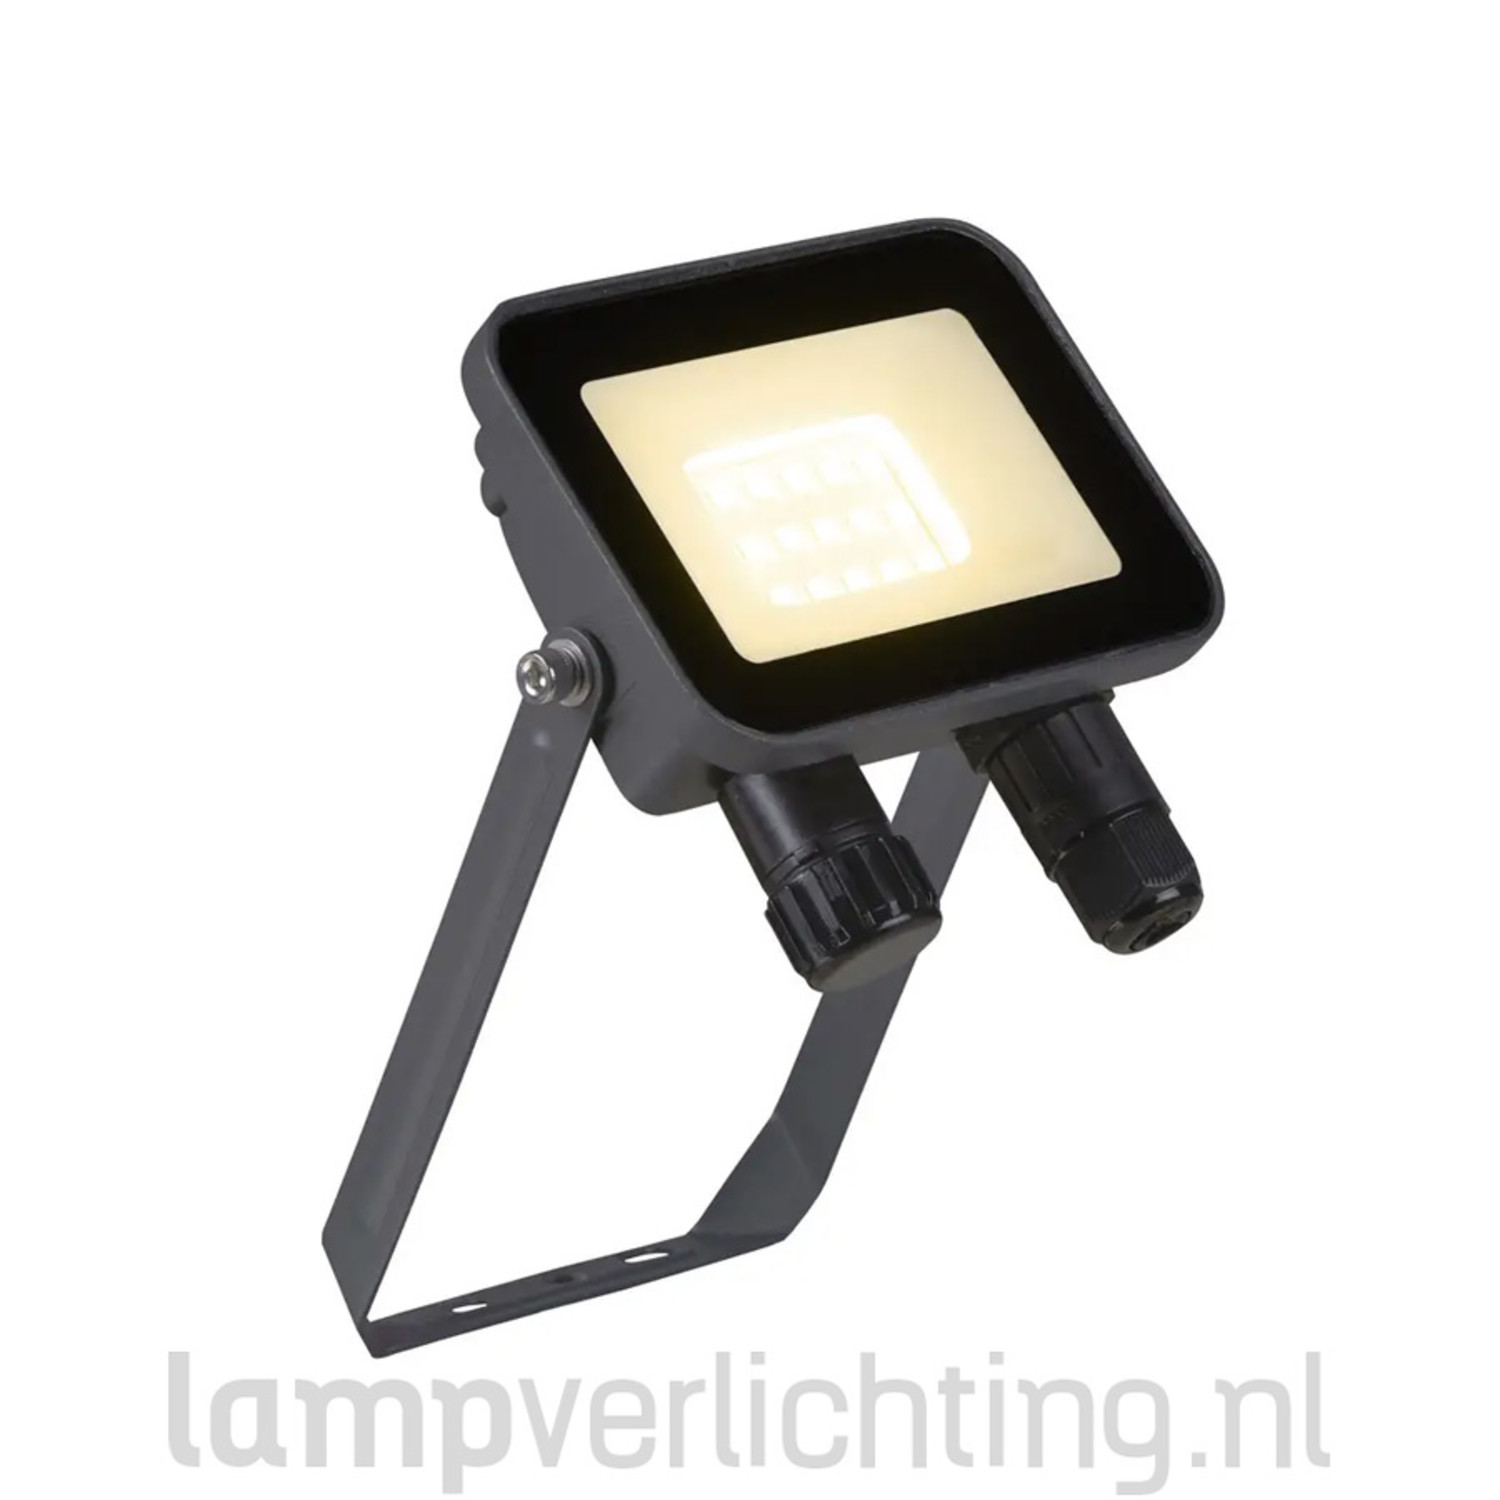 Storing Westers Psychologisch LED Schijnwerper Breedstraler IP65 10W - 1040 lumen - Warmwit 3000K -  LampVerlichting.nl